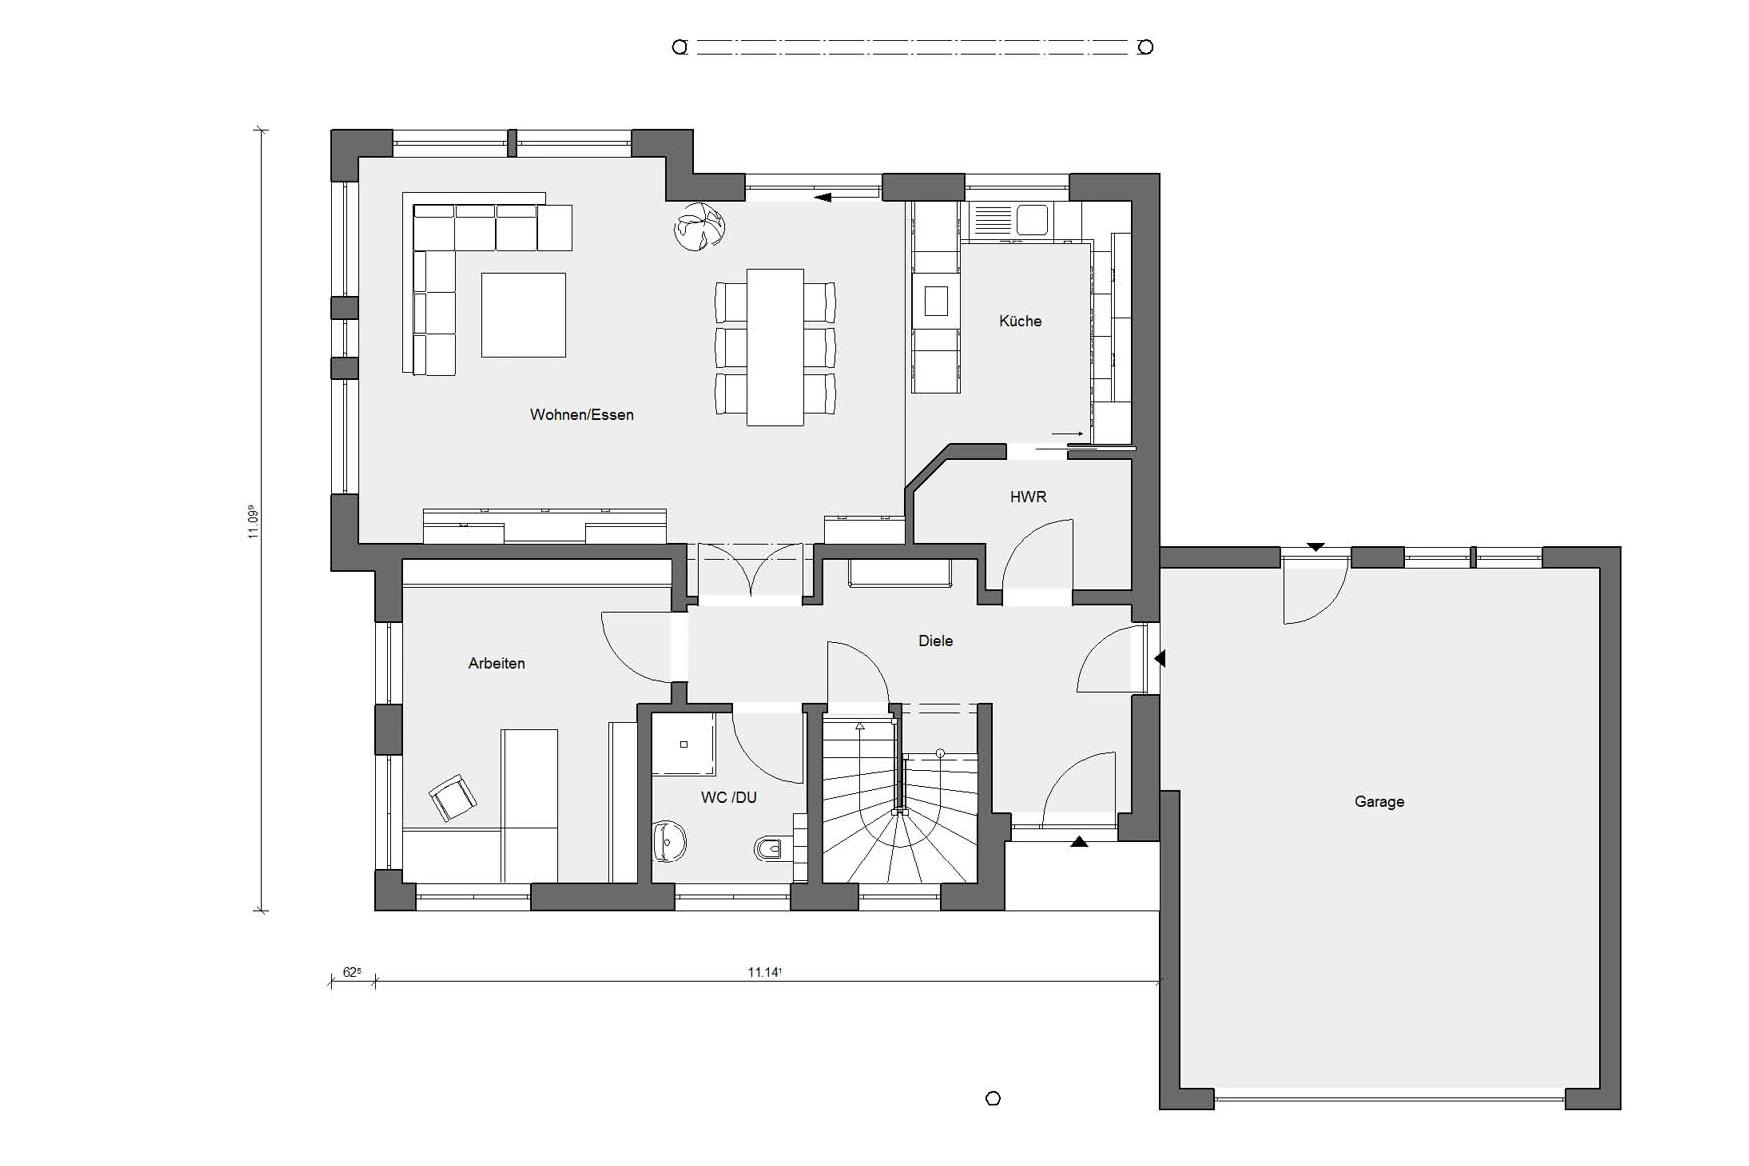 Plan d'étage rez-de-chaussée E 15-201.1 Maison Energy Plus à faible énergie